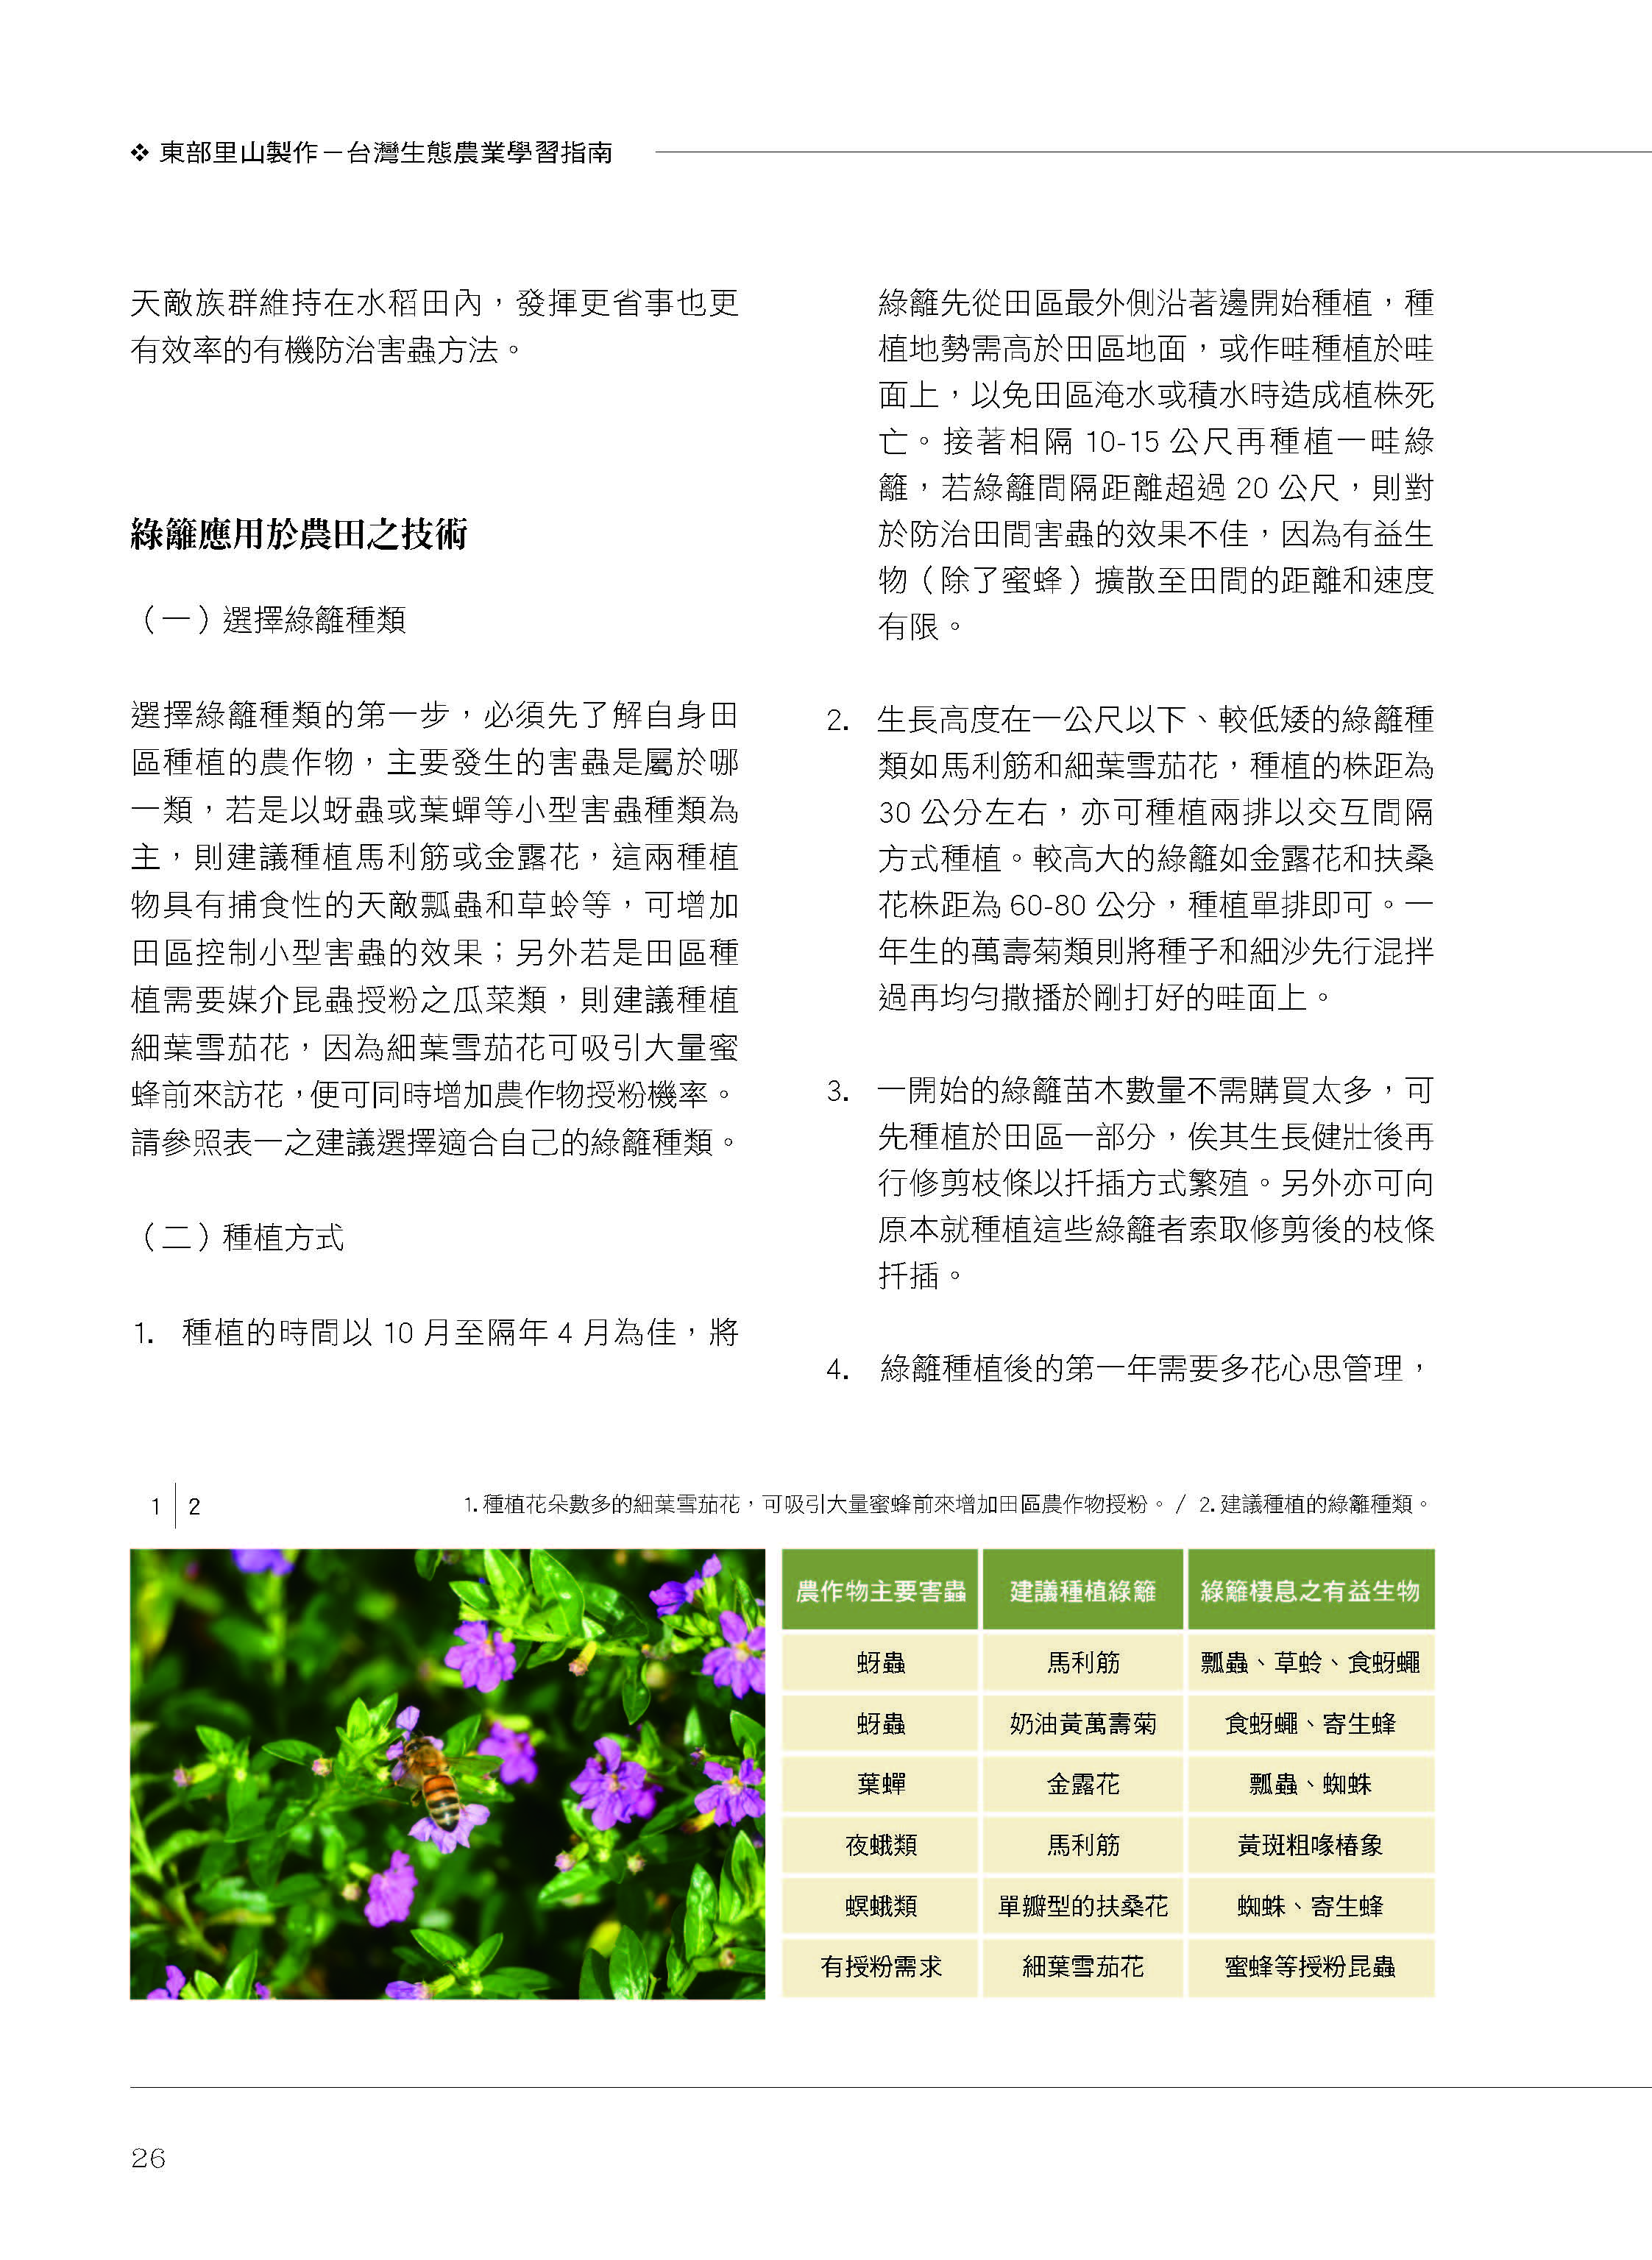 里山台灣－專欄1－研究與現場:農田裡的棲地營造與生物防治-3